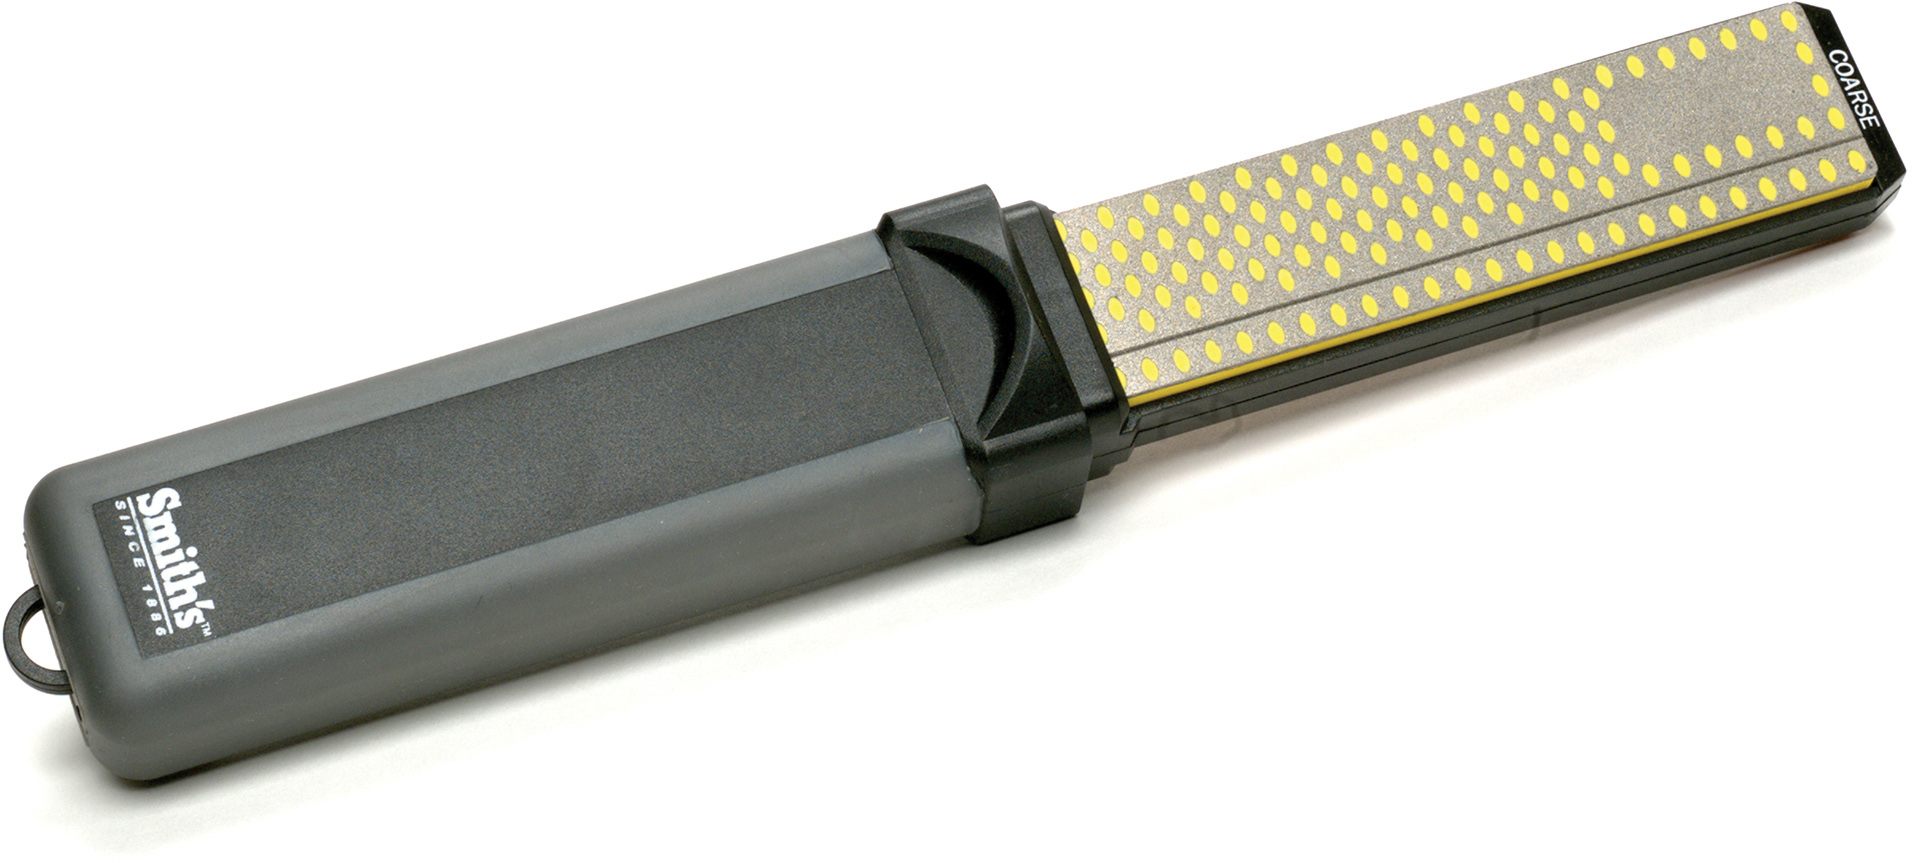 Smith's Orange Pocket Pal Sharpener - Manual Knife Sharpener